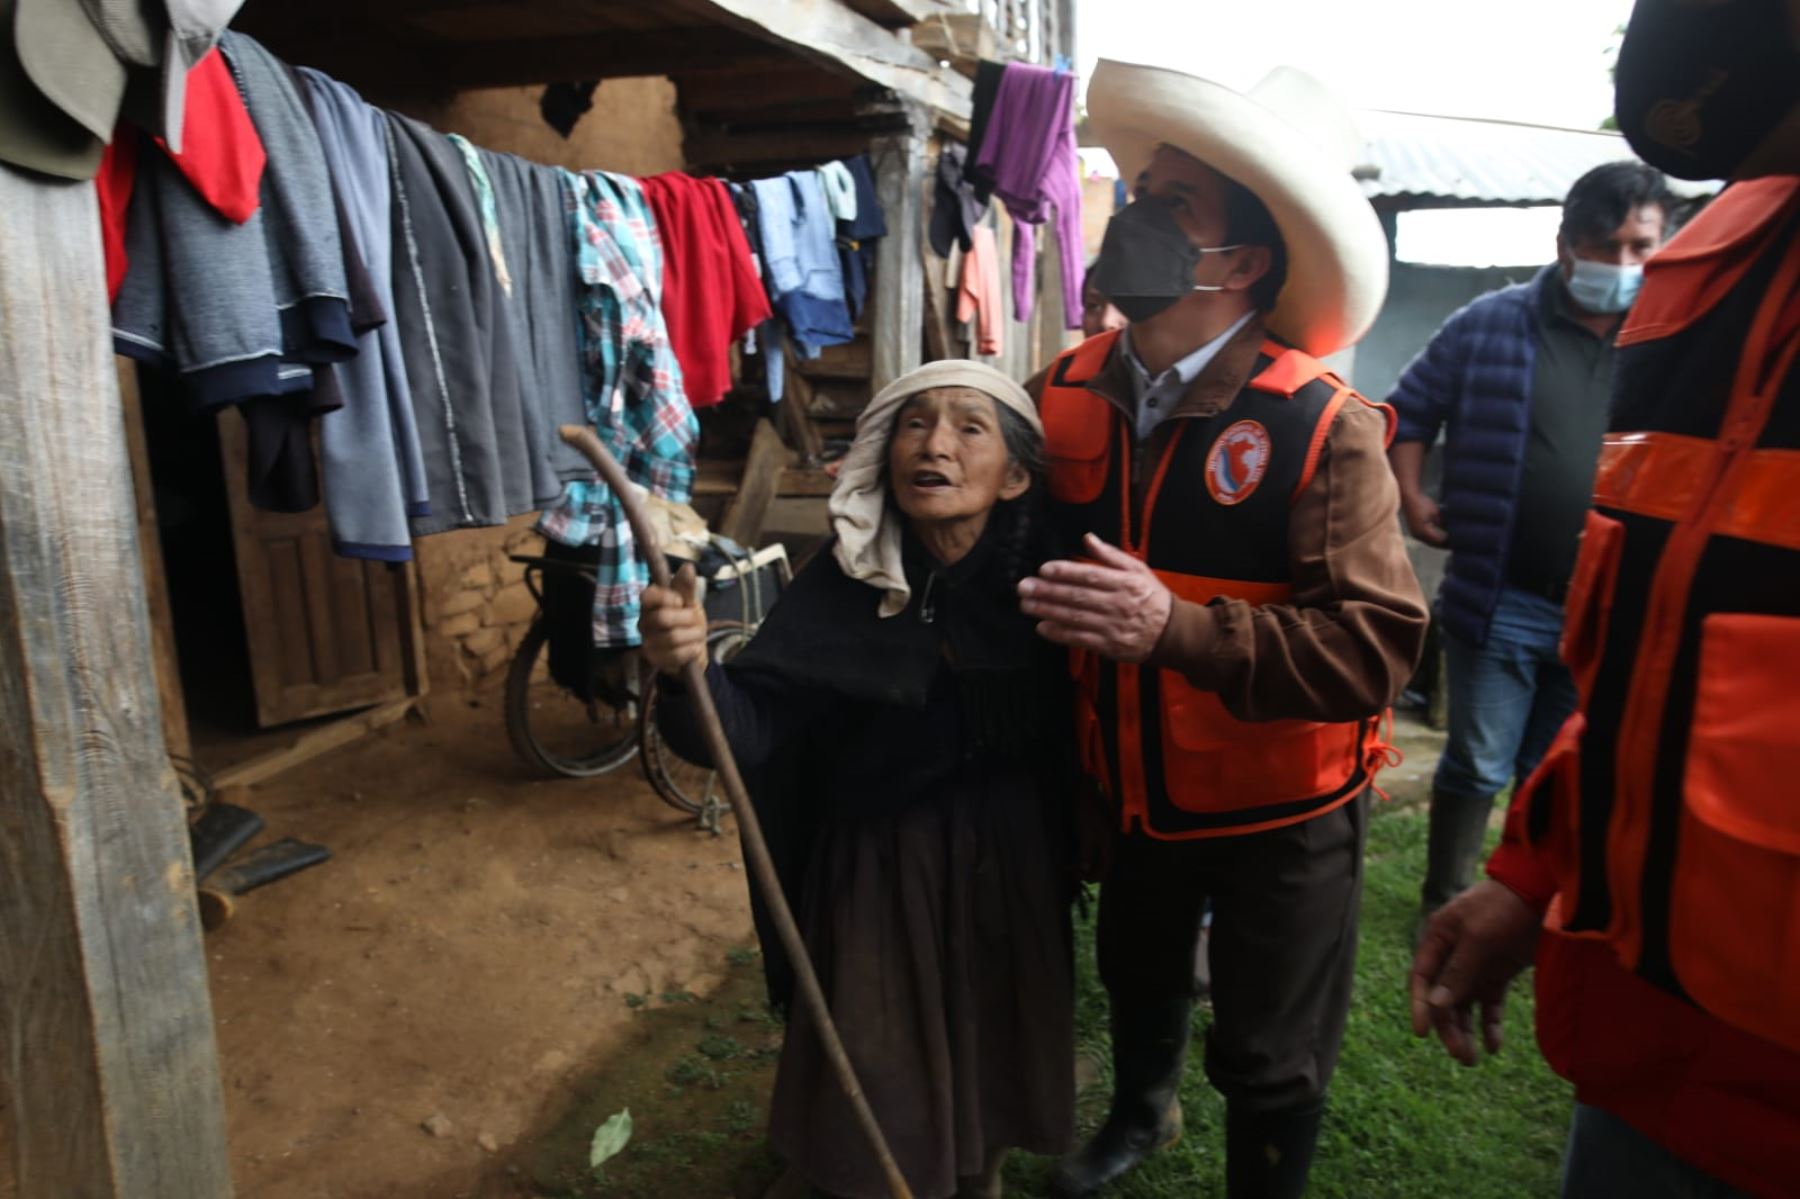 Tras expresar su solidaridad con los afectados por el sismo, el Jefe de Estado dijo que el Perú necesita en este momento responsabilidad y unidad. ANDINA/Prensa Presidencia